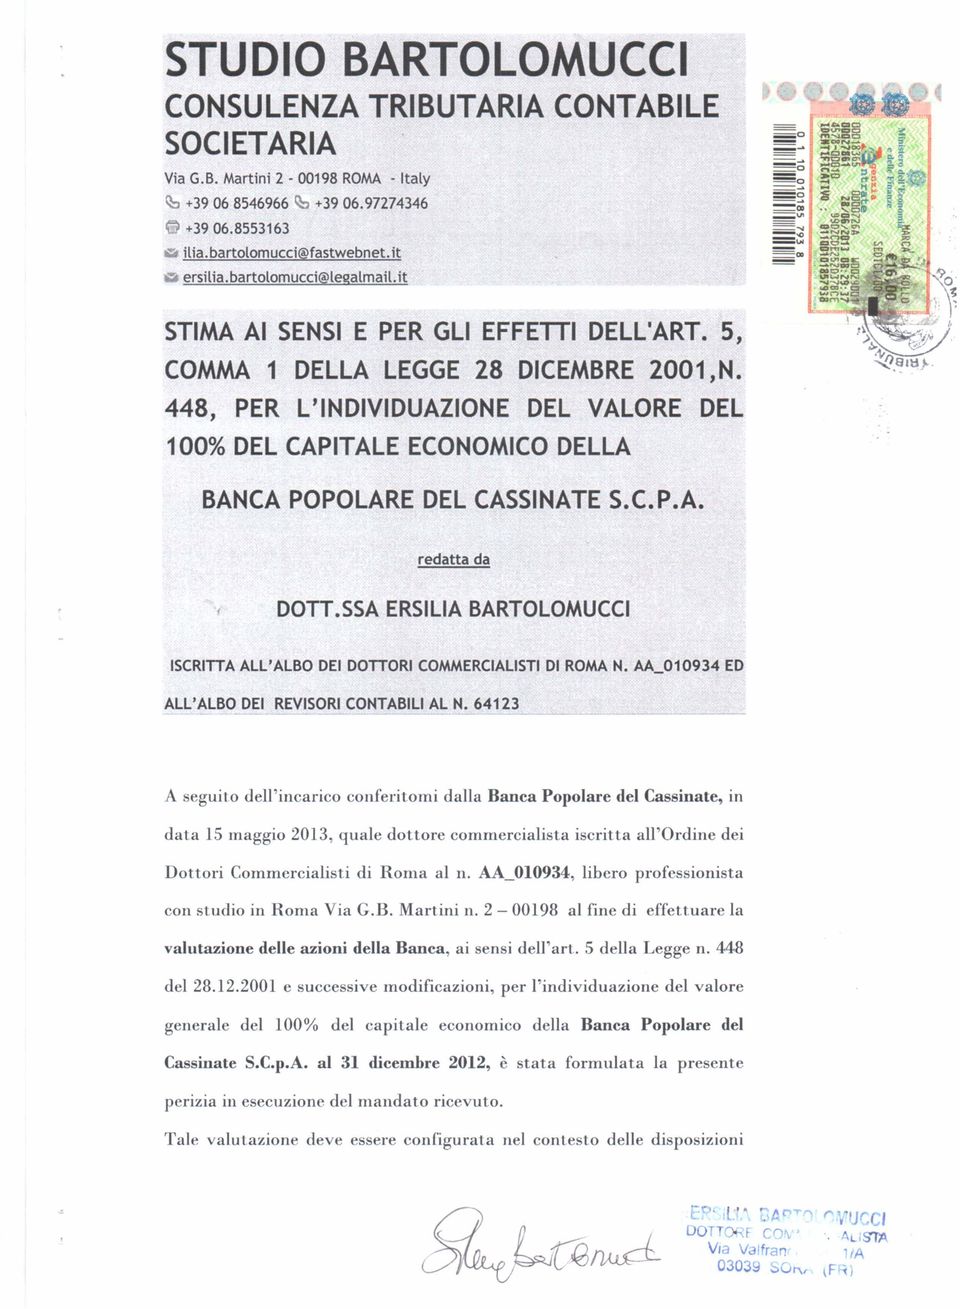 448, PER L'INDIVIDUAZIONE DEL VALORE DEL 100% DEL CAPITALE ECONOMICO DELLA BANCA POPOLARE DEL CASSINATE S.C. P.A. redatta da DOTT.